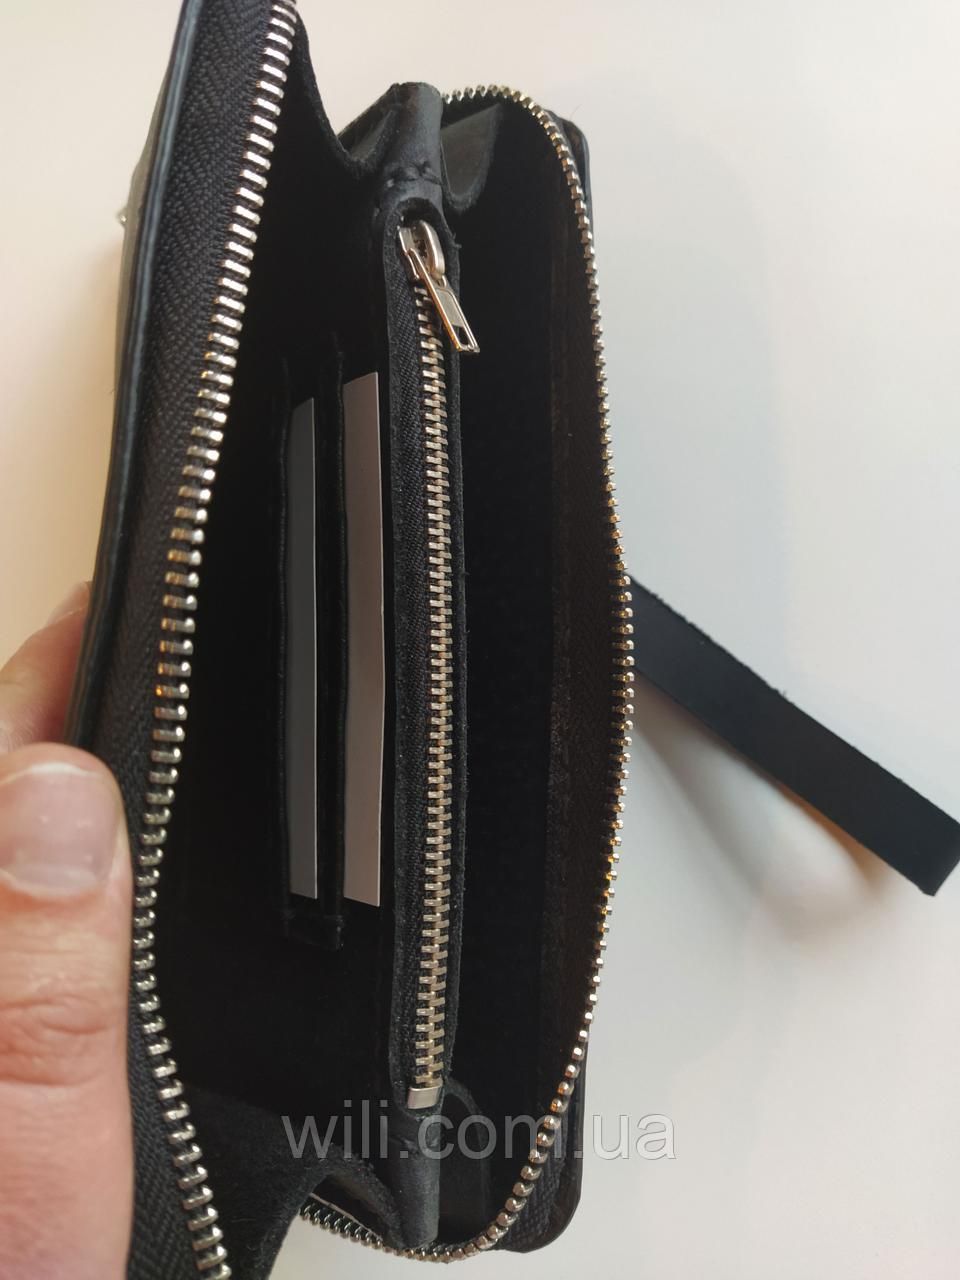 Кожаный кошелек с ремнем на запястье "007"